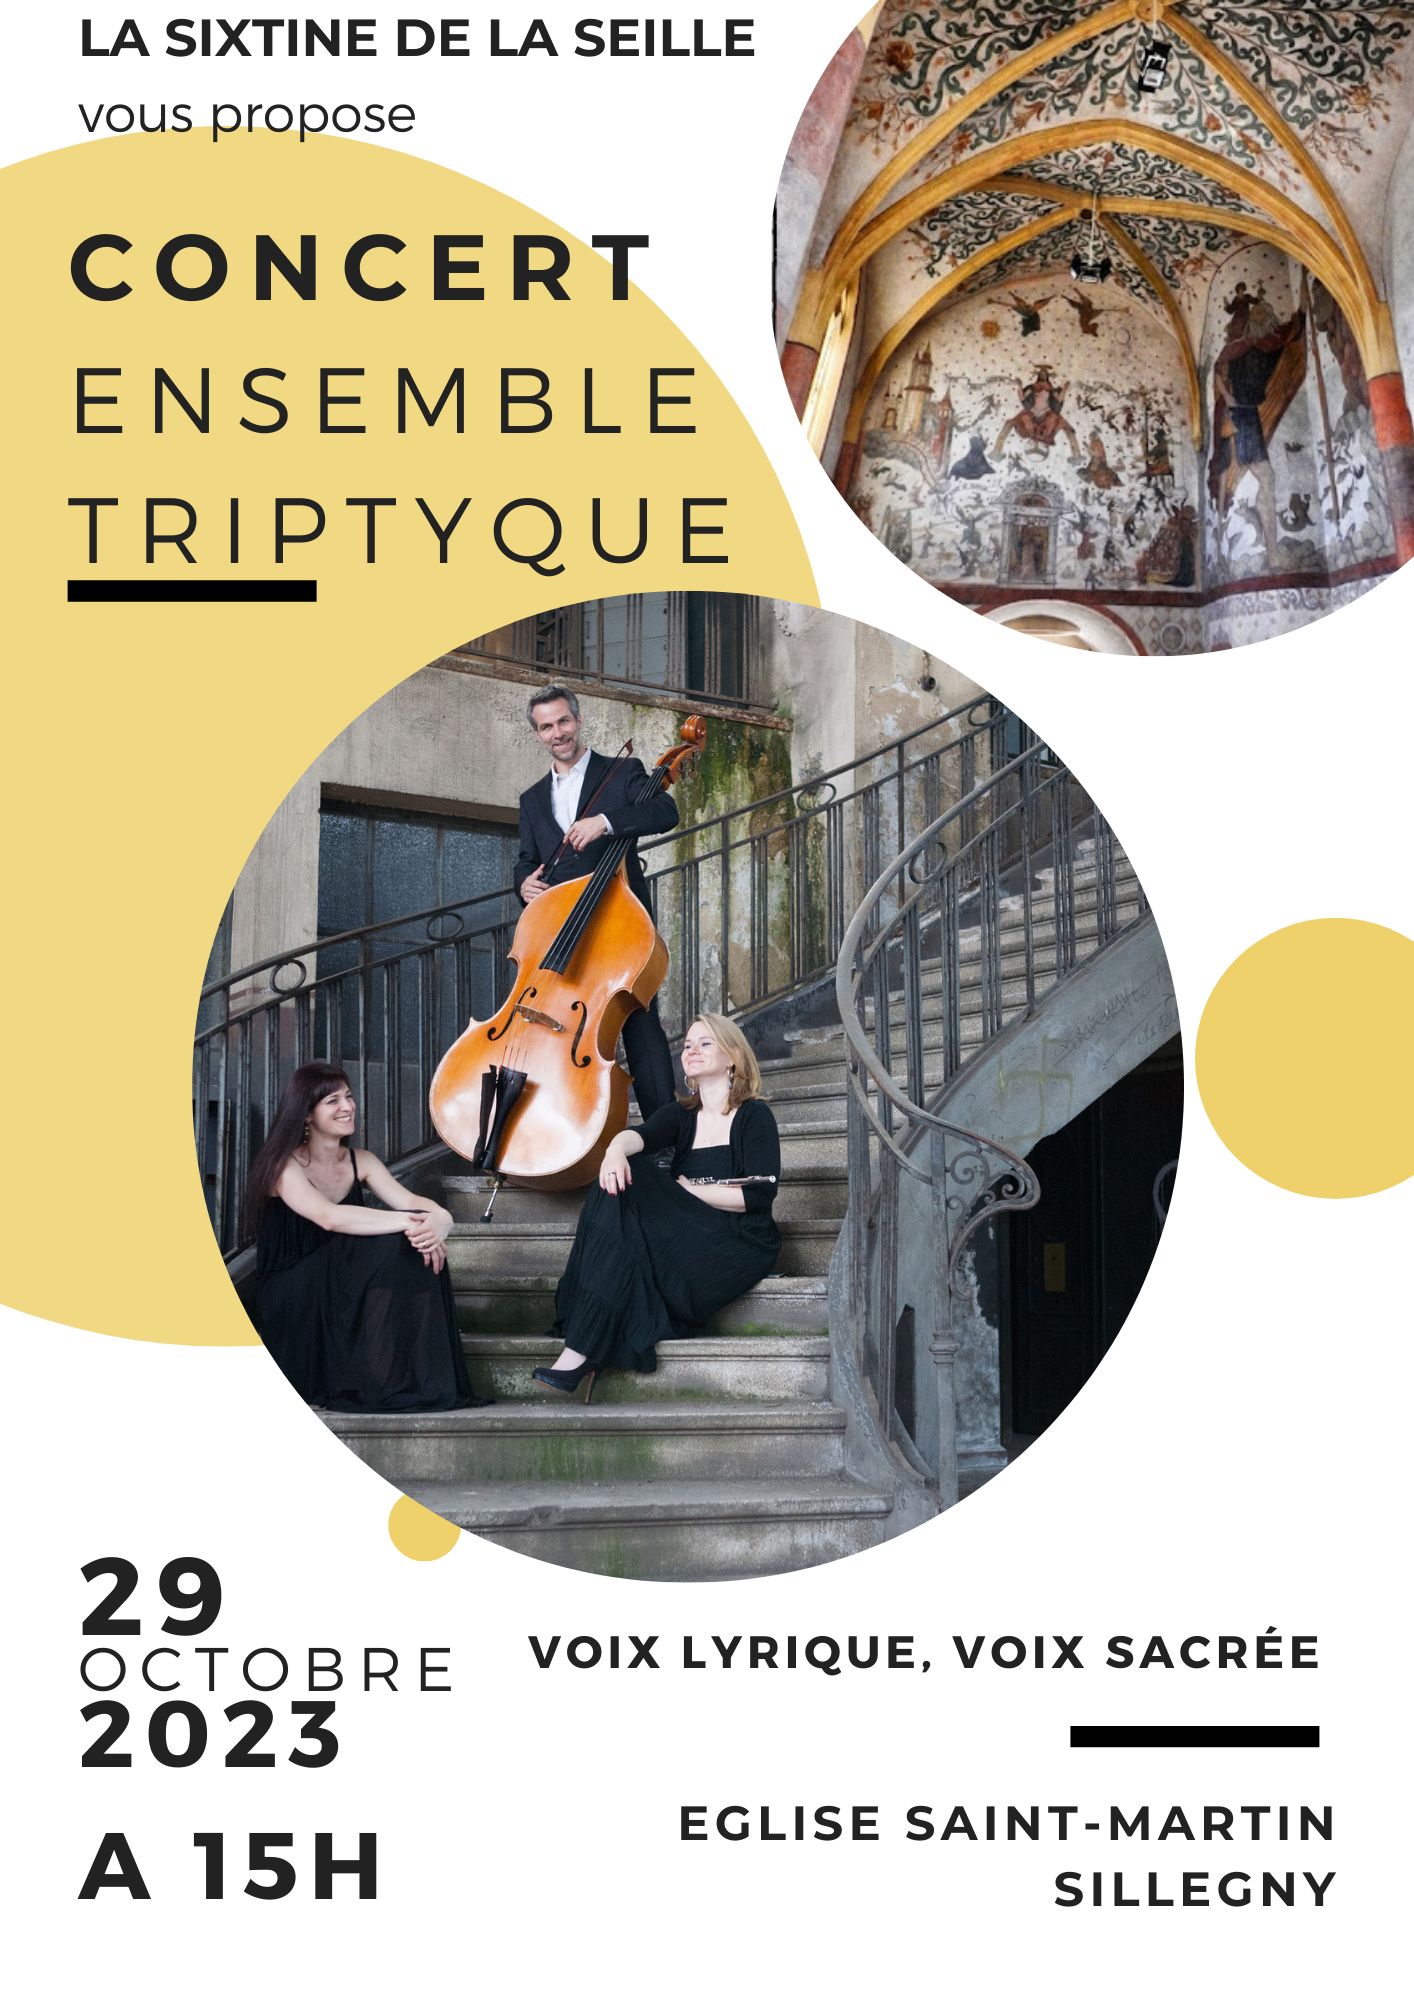 Concert - Ensemble triptyque